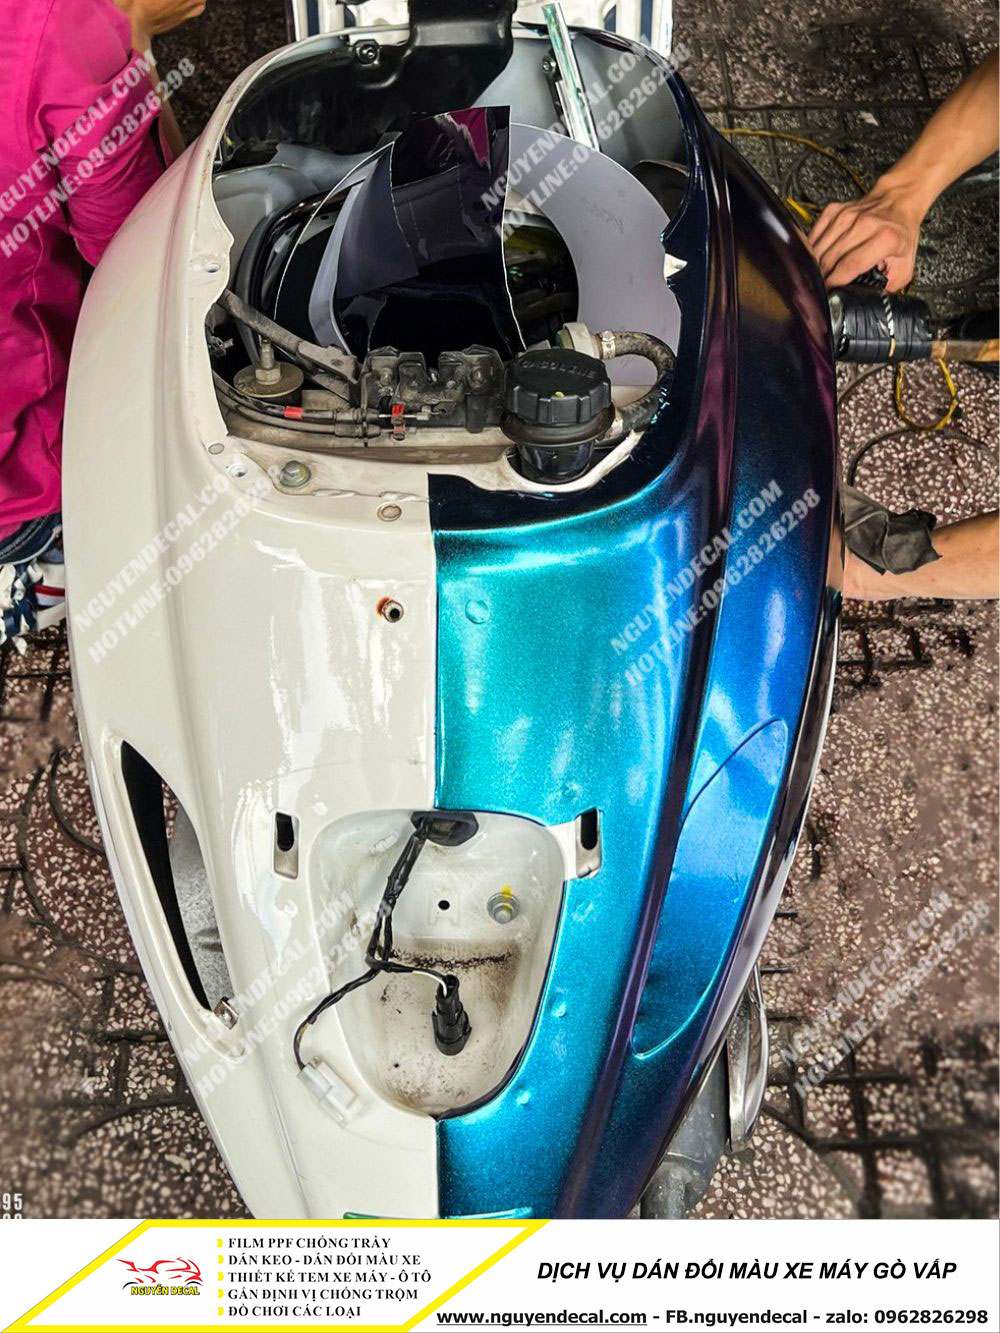 Tạo điểm nhấn mới: Dán decal đổi màu xe máy cực chất ở Gò Vấp